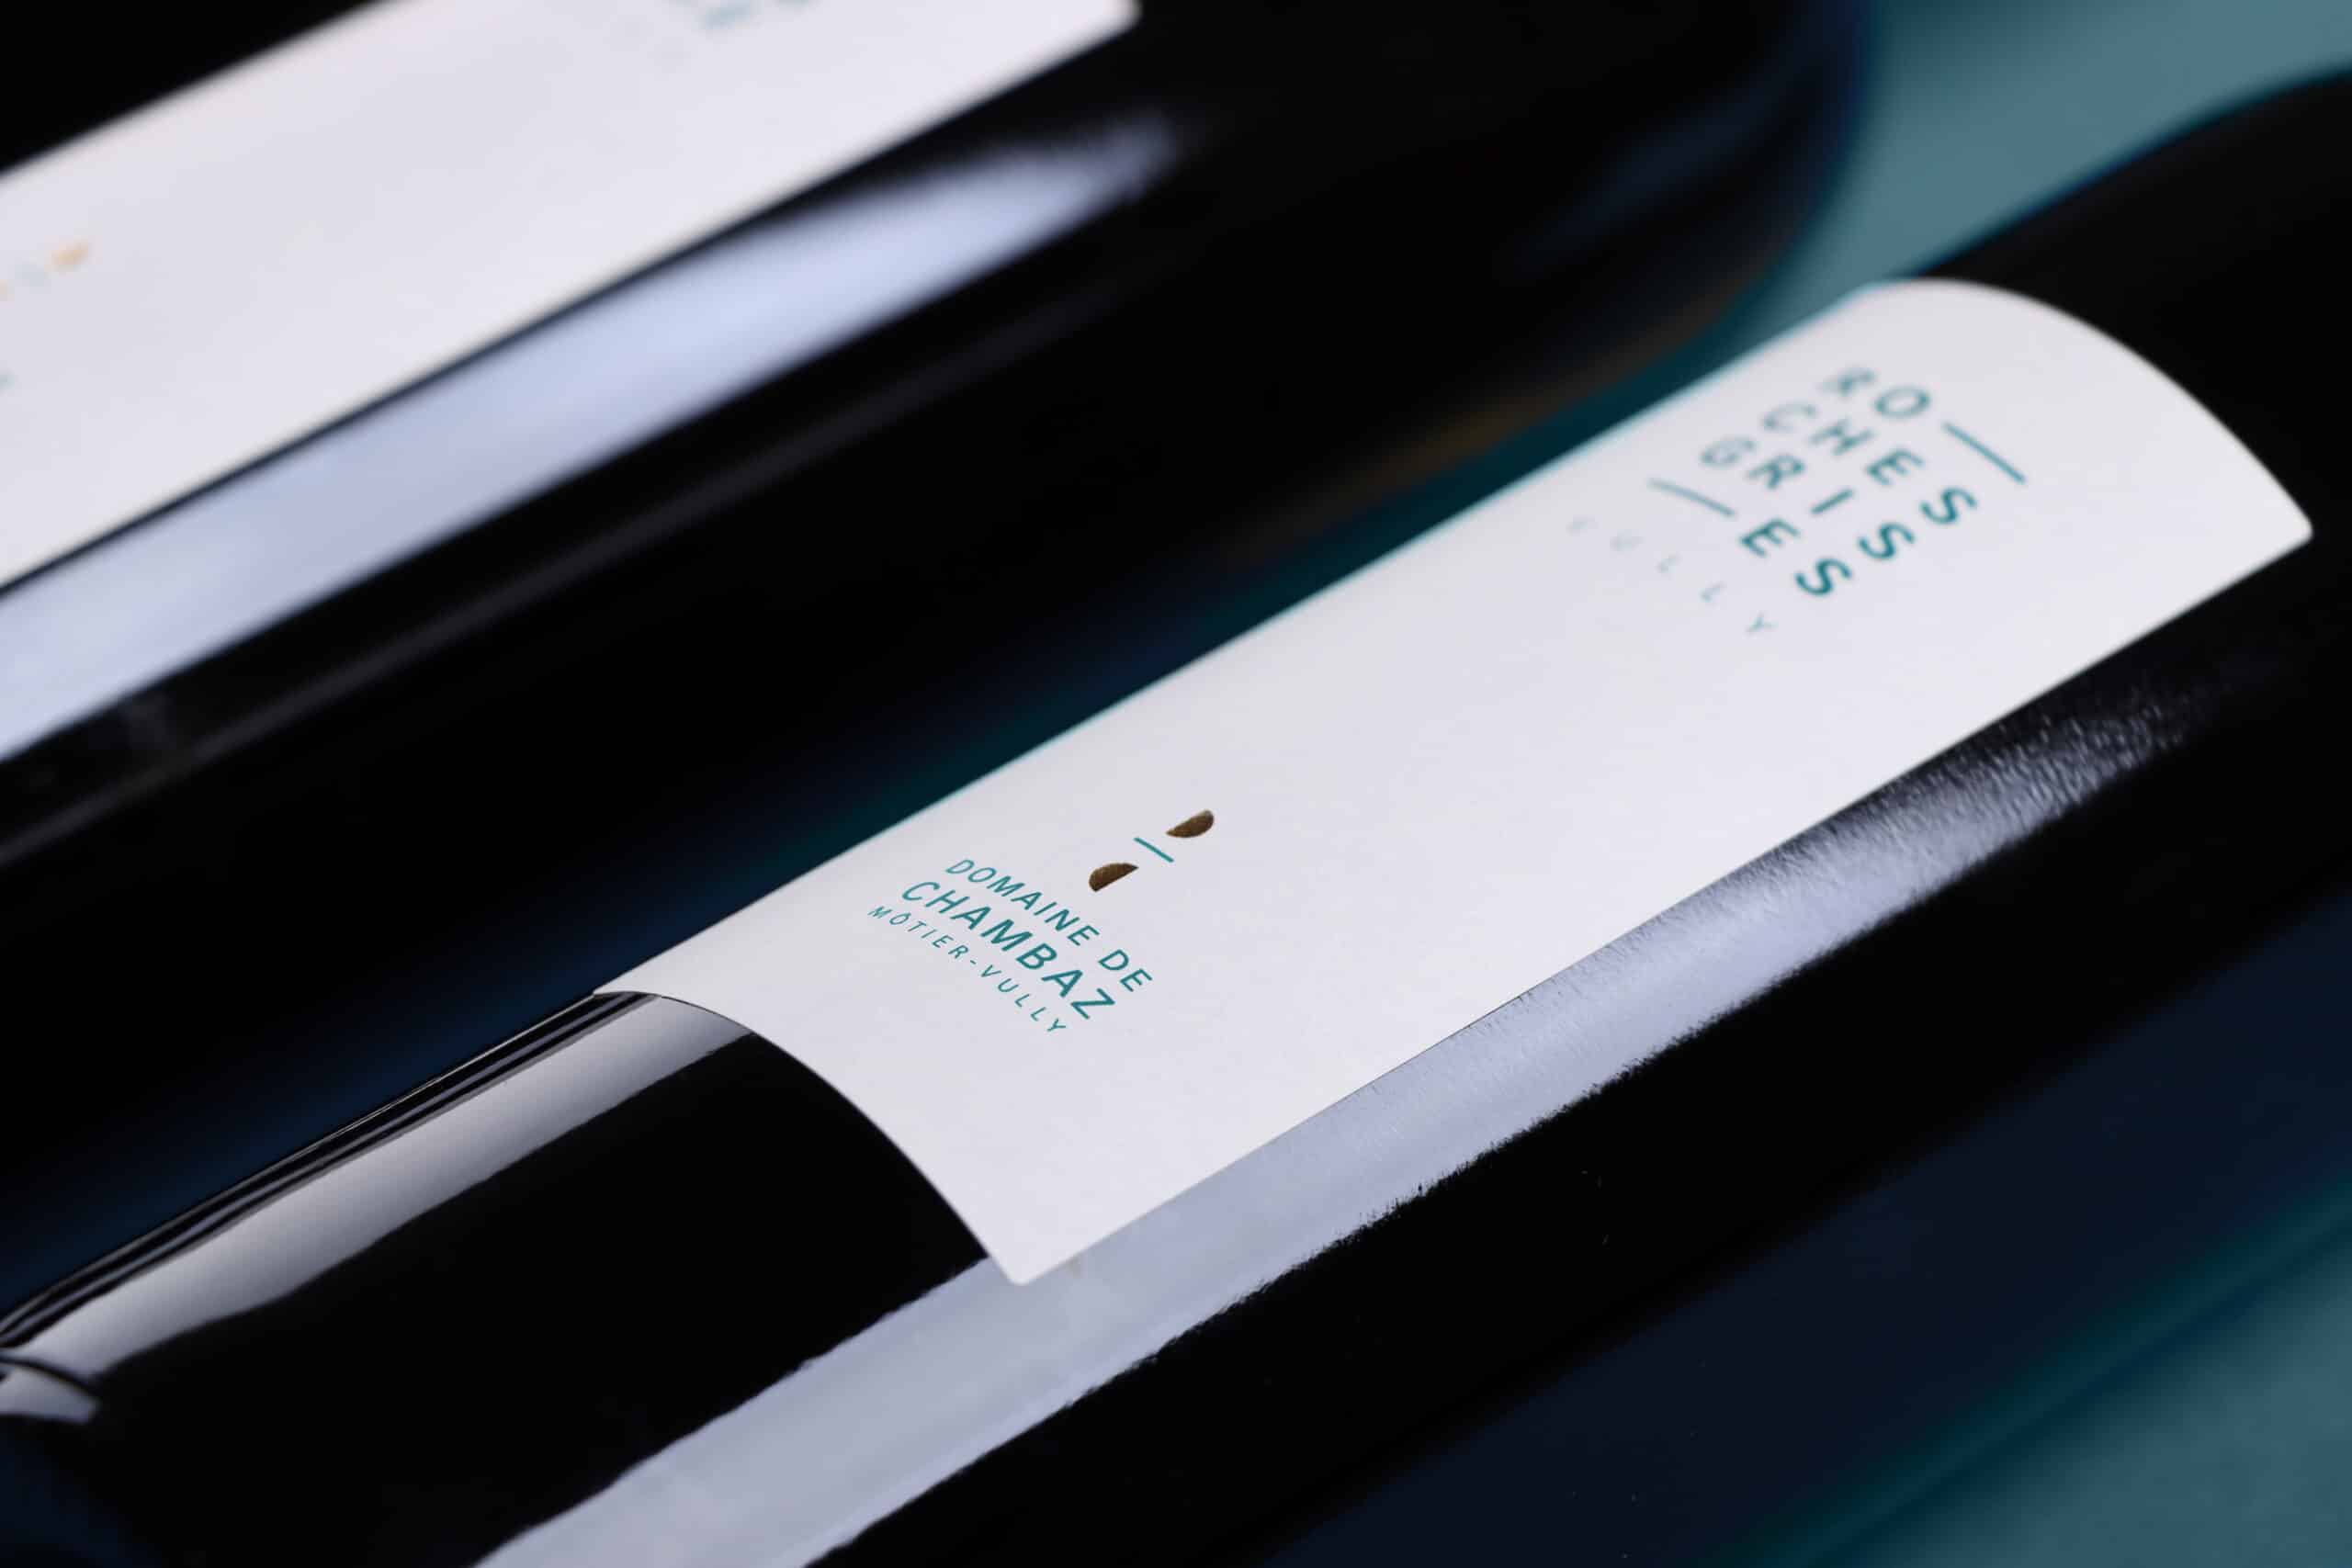 Étiquette du vin Roches Grises du Domaine de Chambaz, Môtier-Vully.